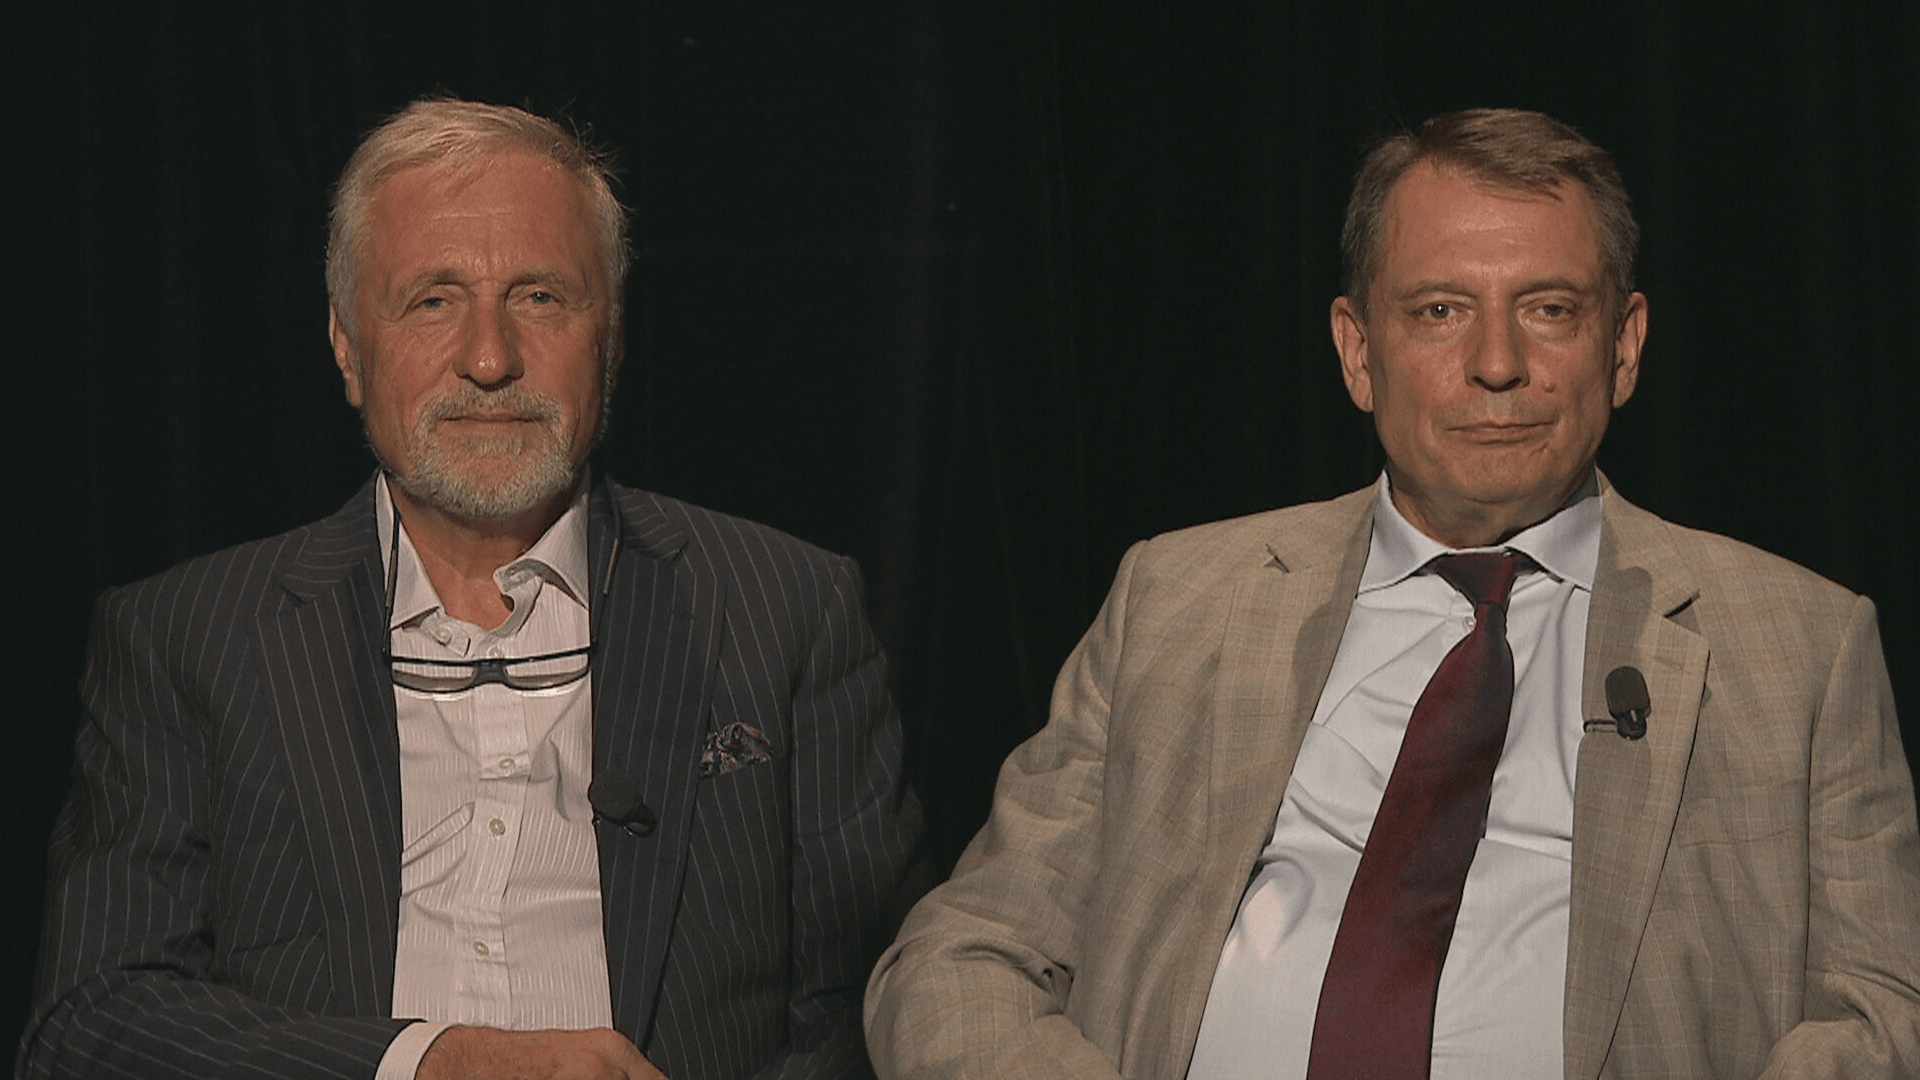 Bývalí vrcholní politici Mirek Topolánek a Jiří Paroubek